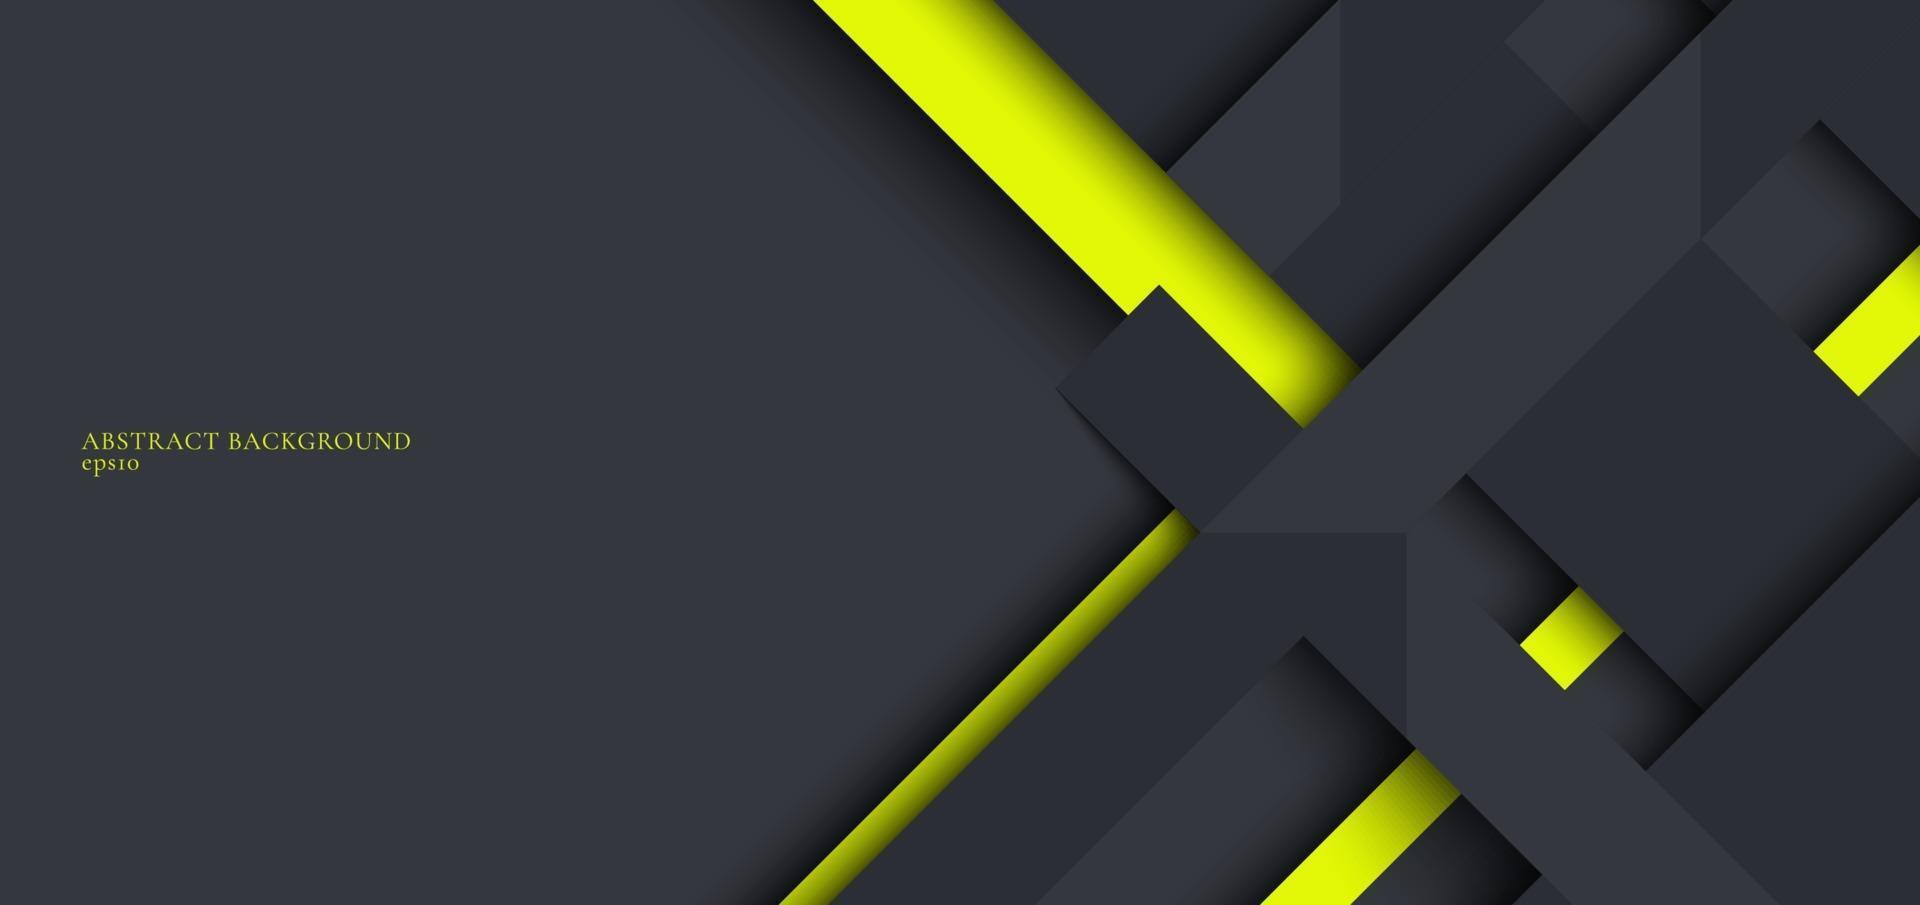 banner web design template listras geométricas cinza e verdes sobrepostas com sombra em fundo escuro vetor